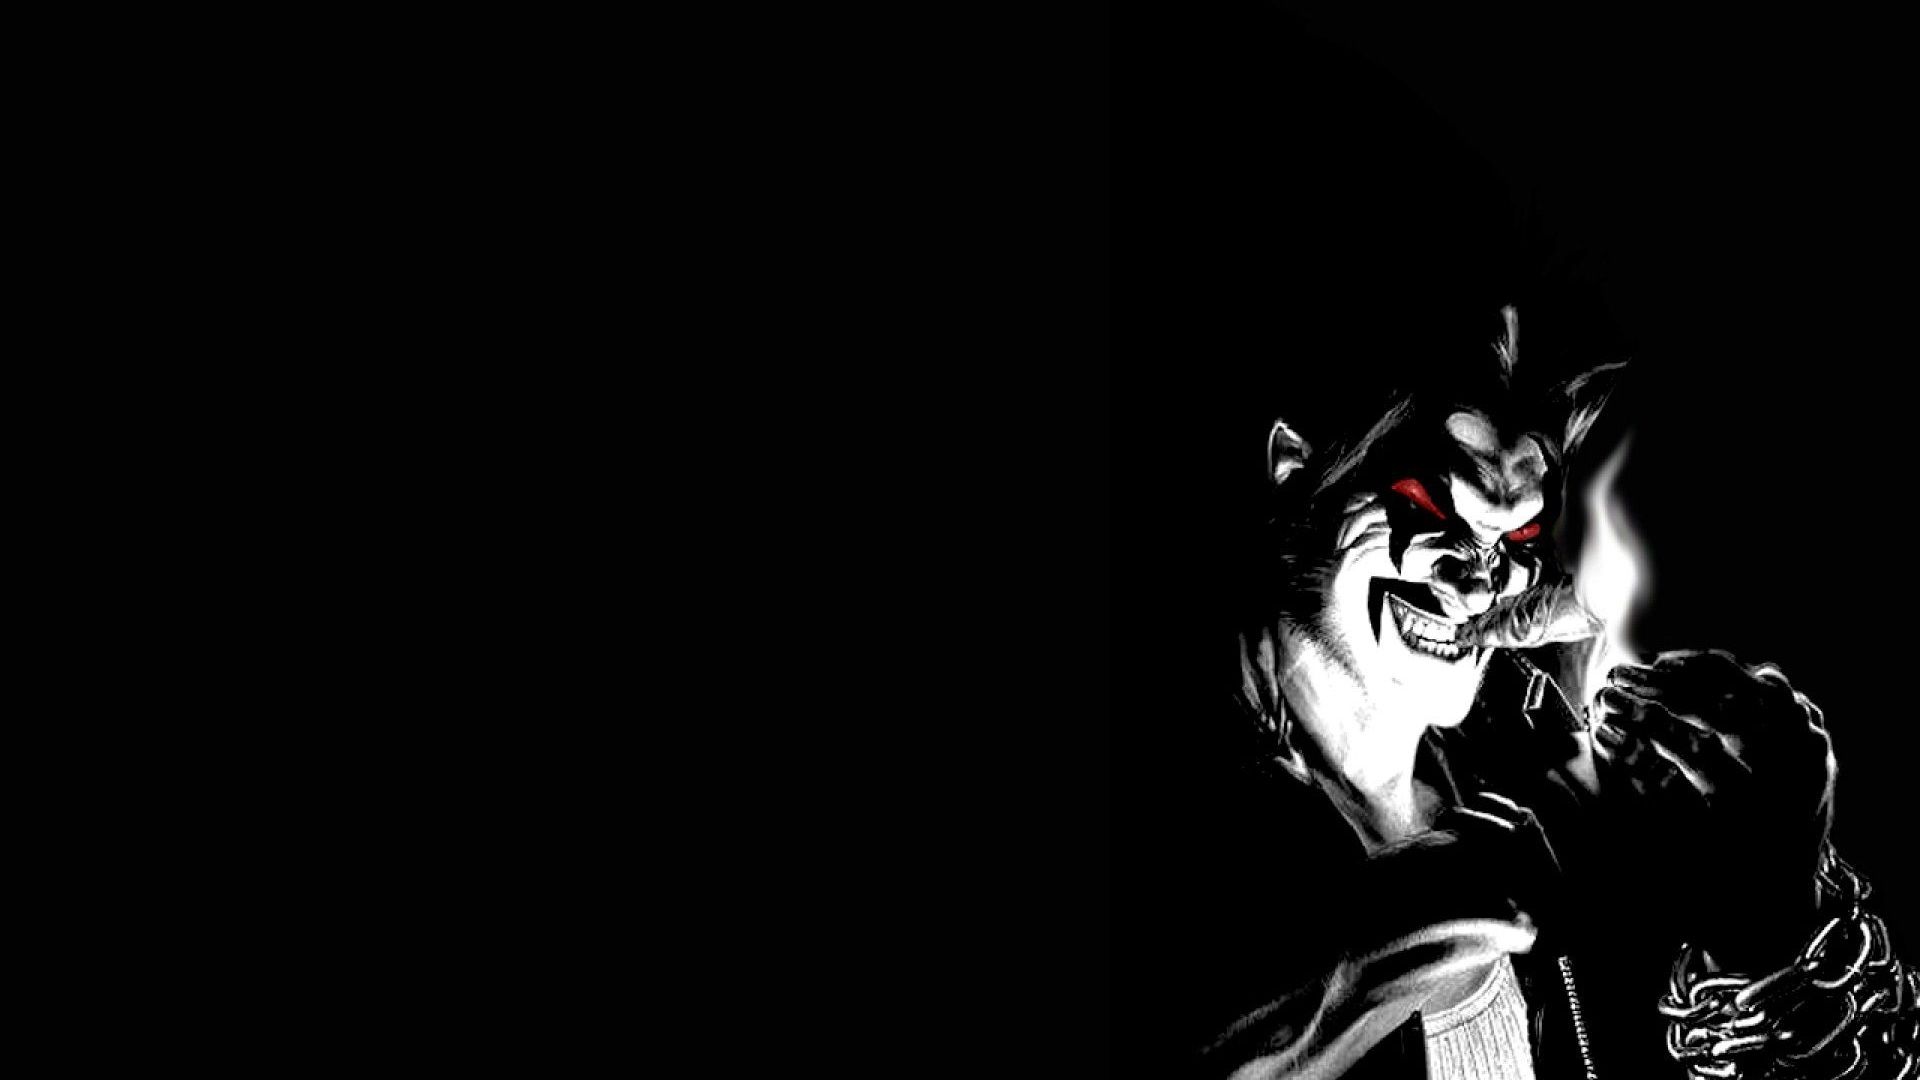 Free download Horror Anime 4K Wallpaper Top Horror Anime 4K Background [1920x1200] for your Desktop, Mobile & Tablet. Explore 4k Black Anime Wallpaperk Black Anime Wallpaper, 4K Anime